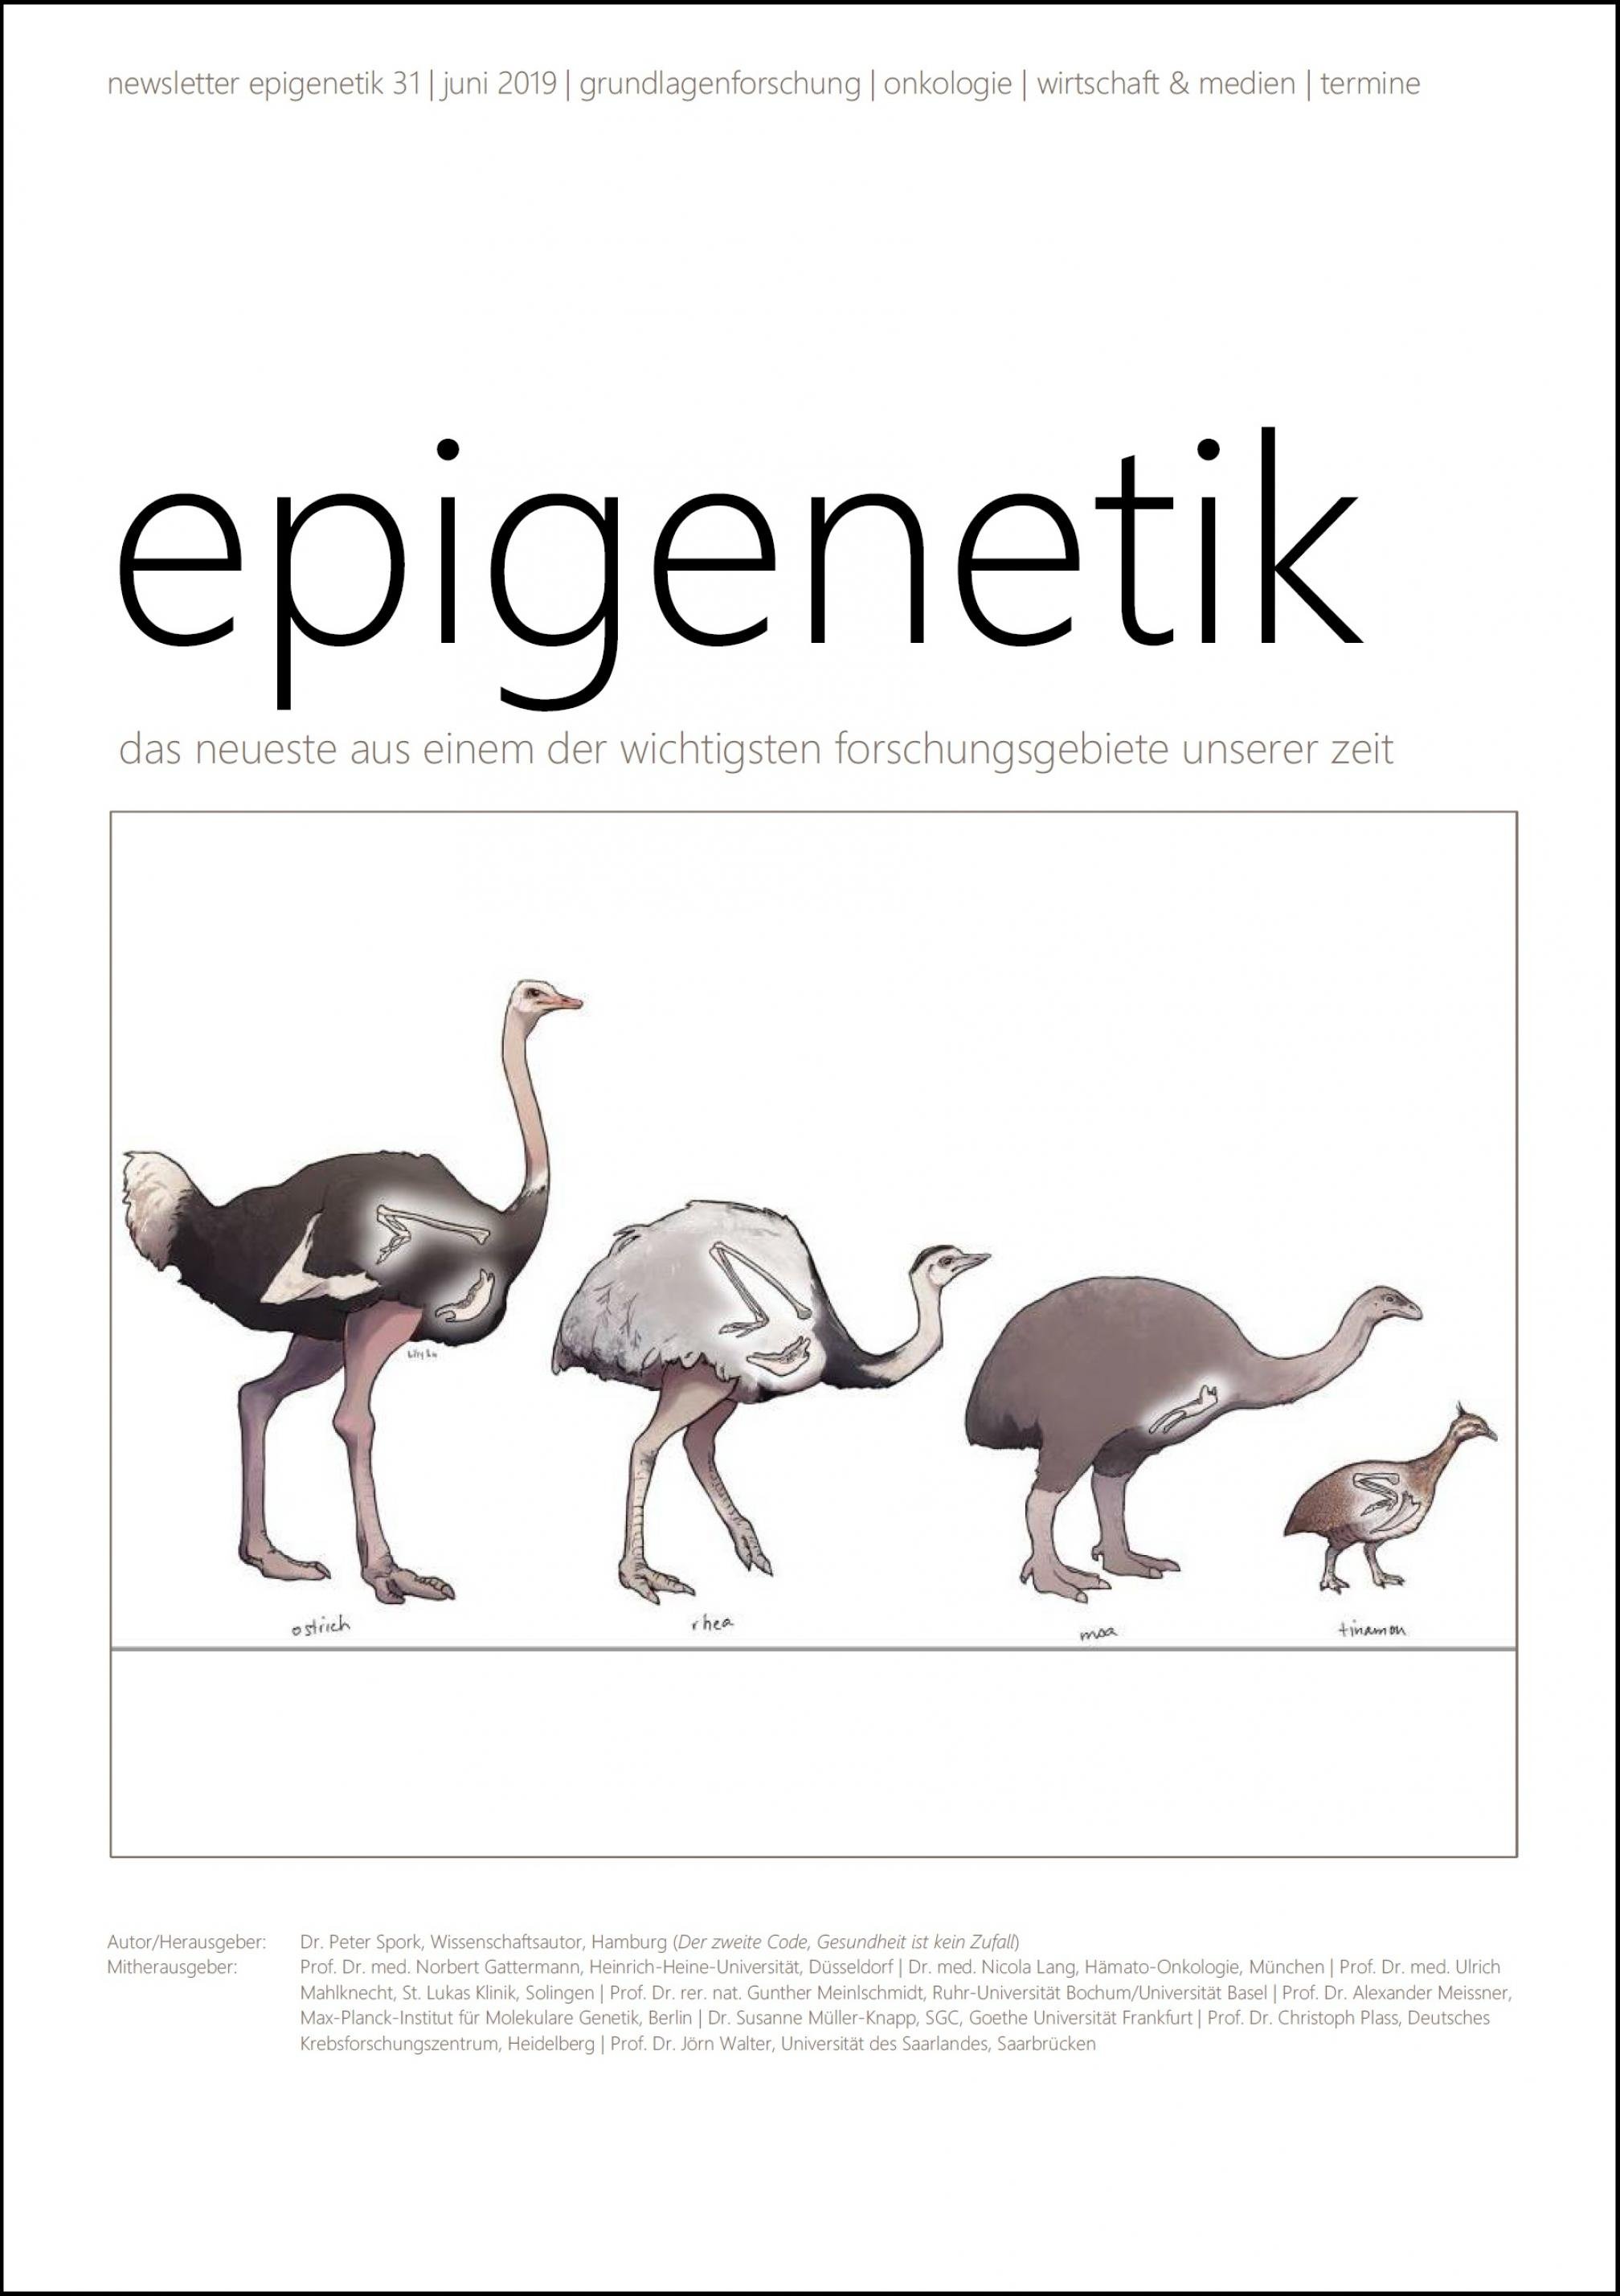 Newsletter Epigenetik 31 / Juni 2019 / das neueste aus einem der wichtigsten forschungsgebiete unserer zeit